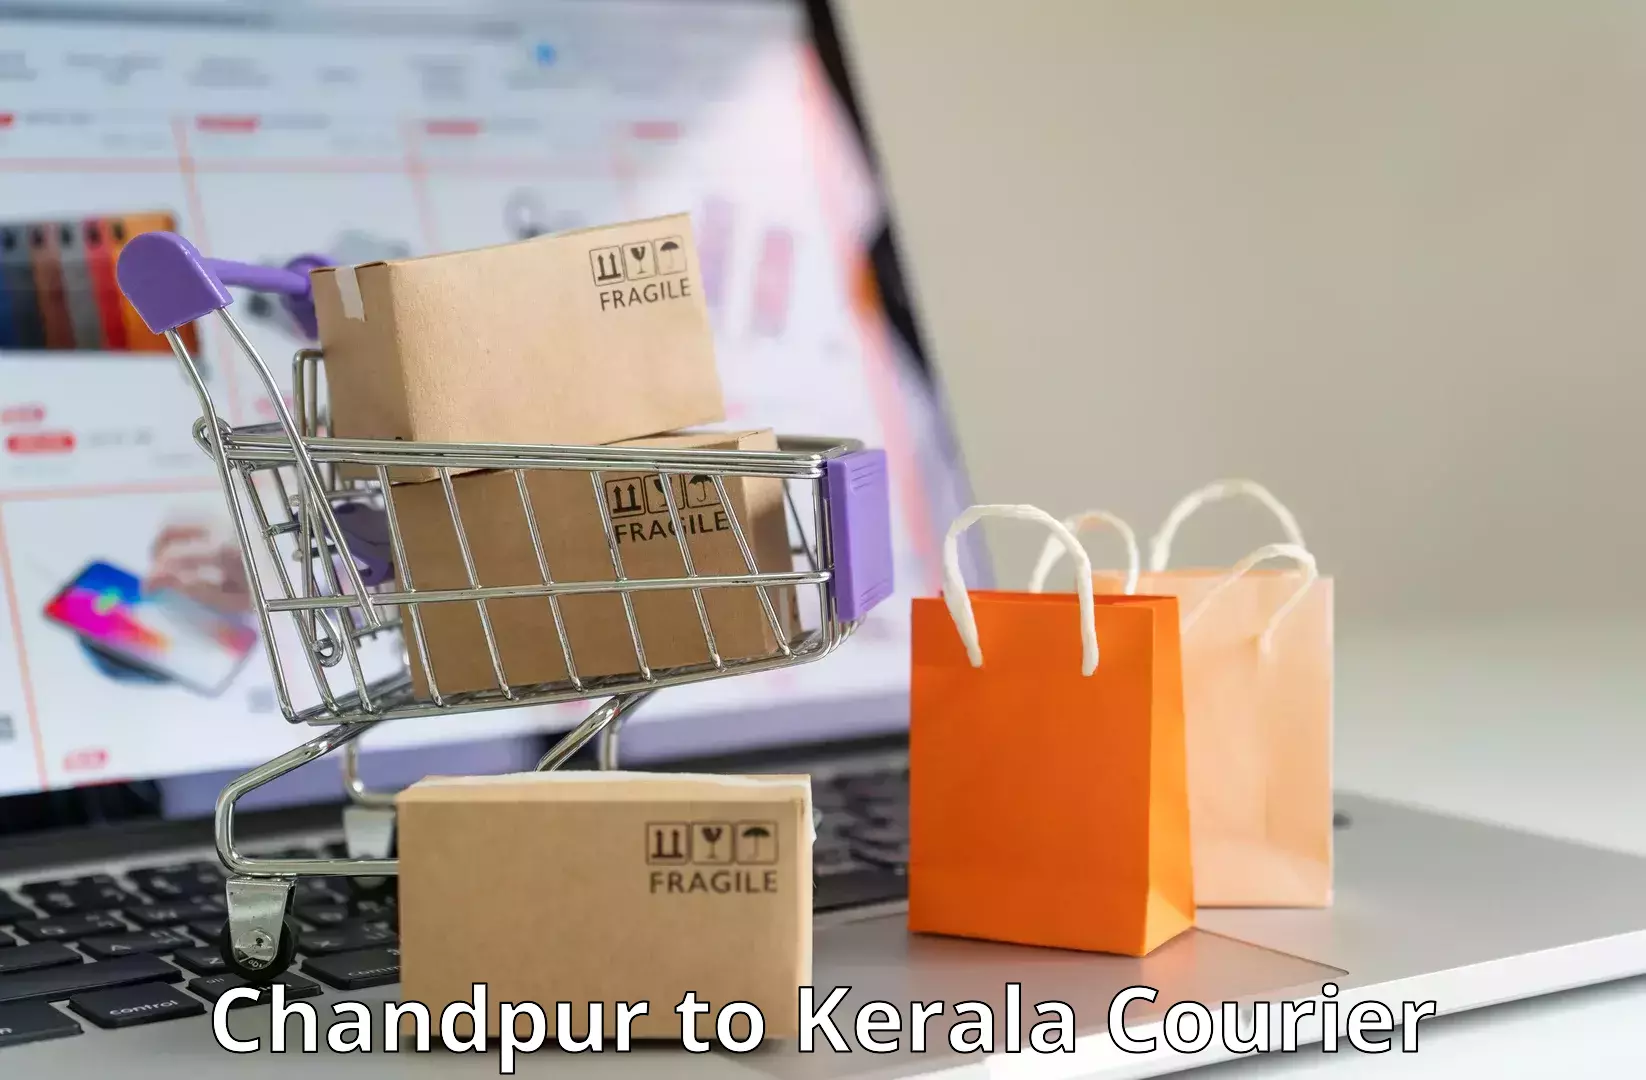 Courier service partnerships Chandpur to Adoor